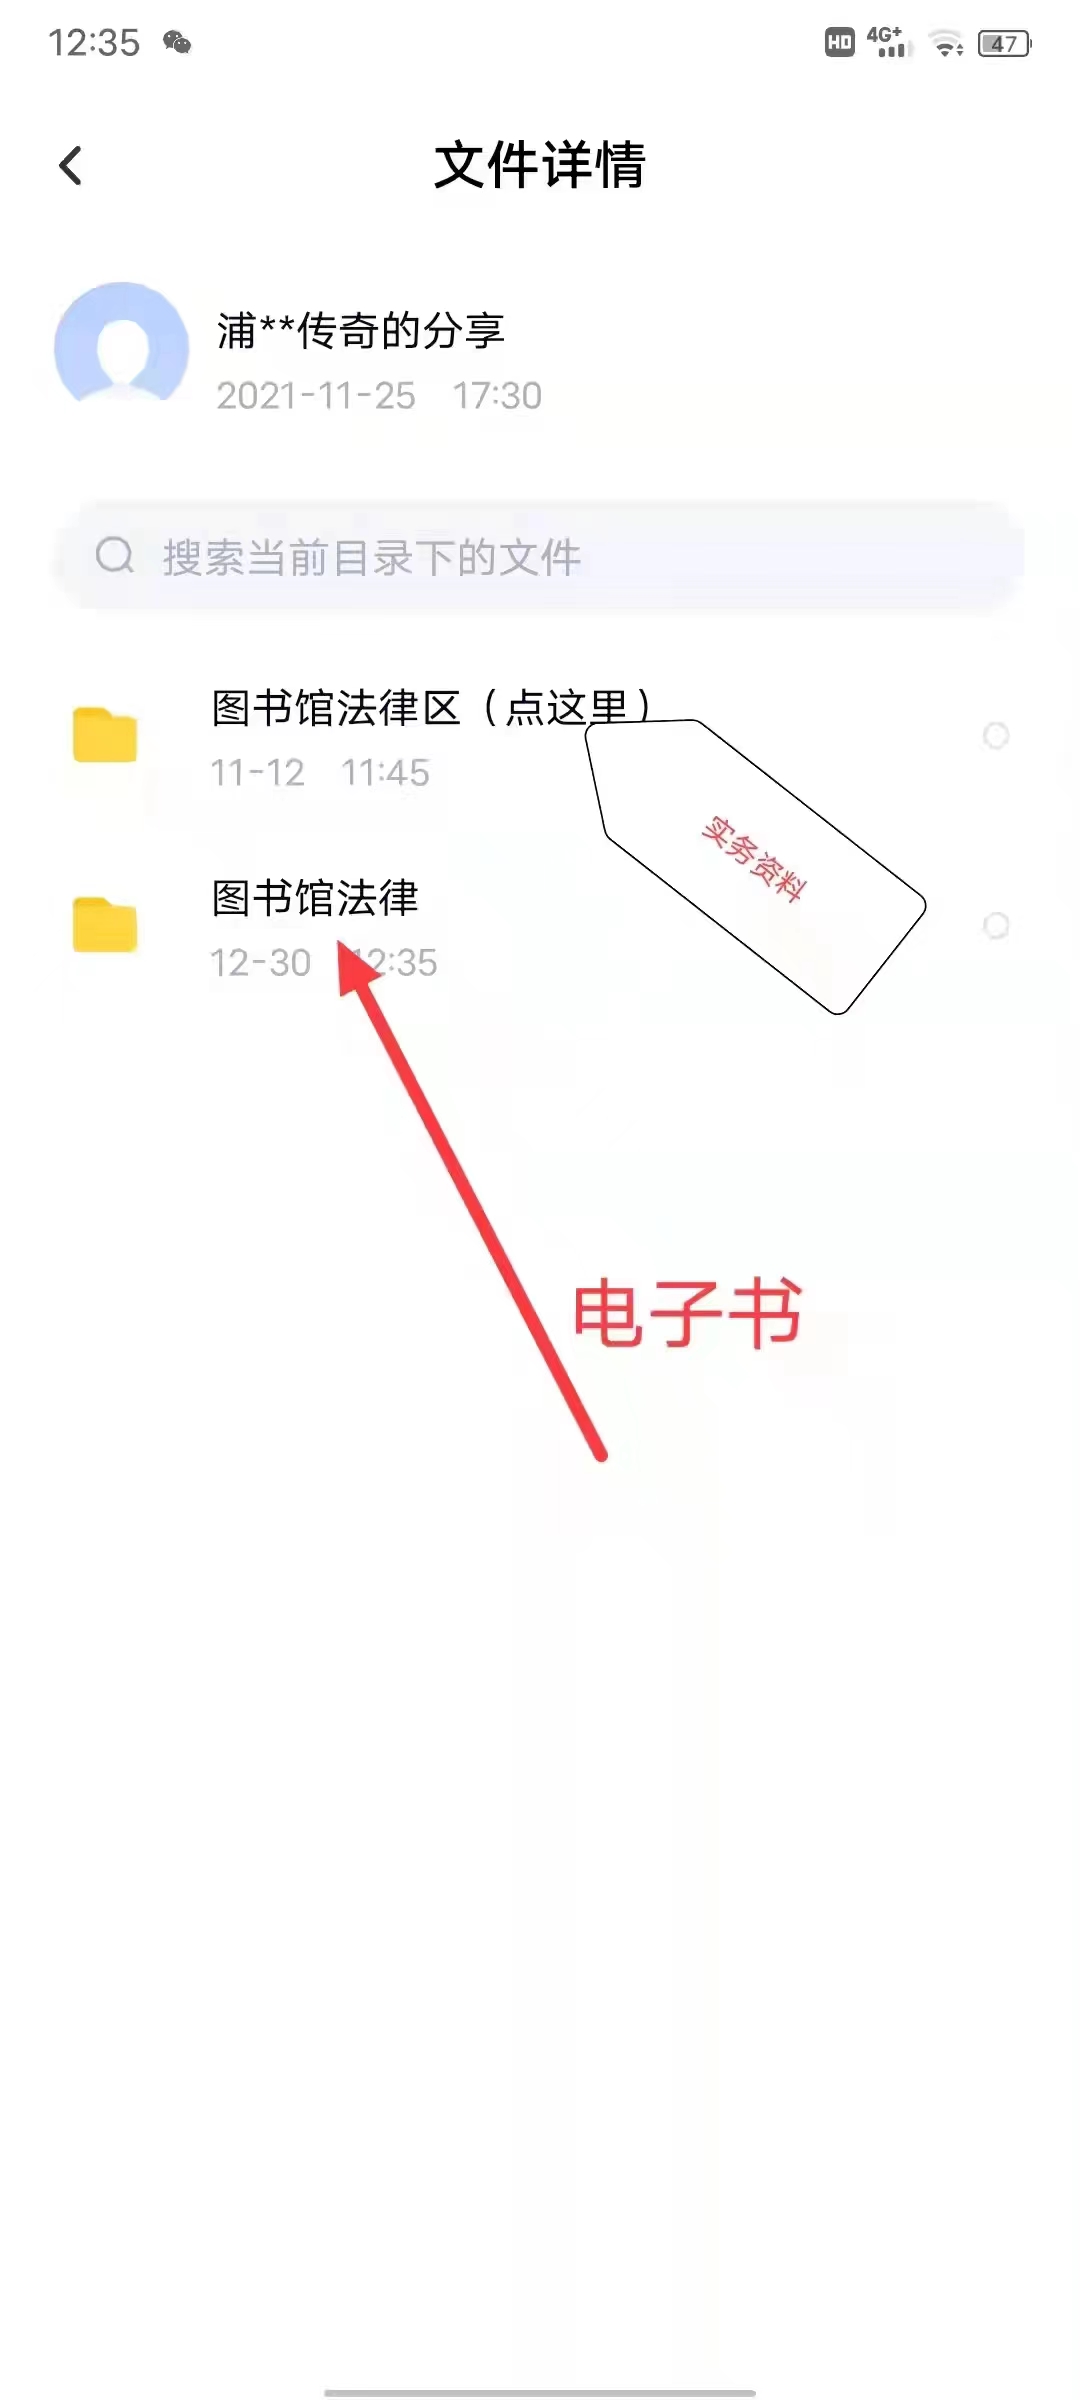 【法律】【PDF】235 英文合同起草与审核 202201 张宁，柳治平